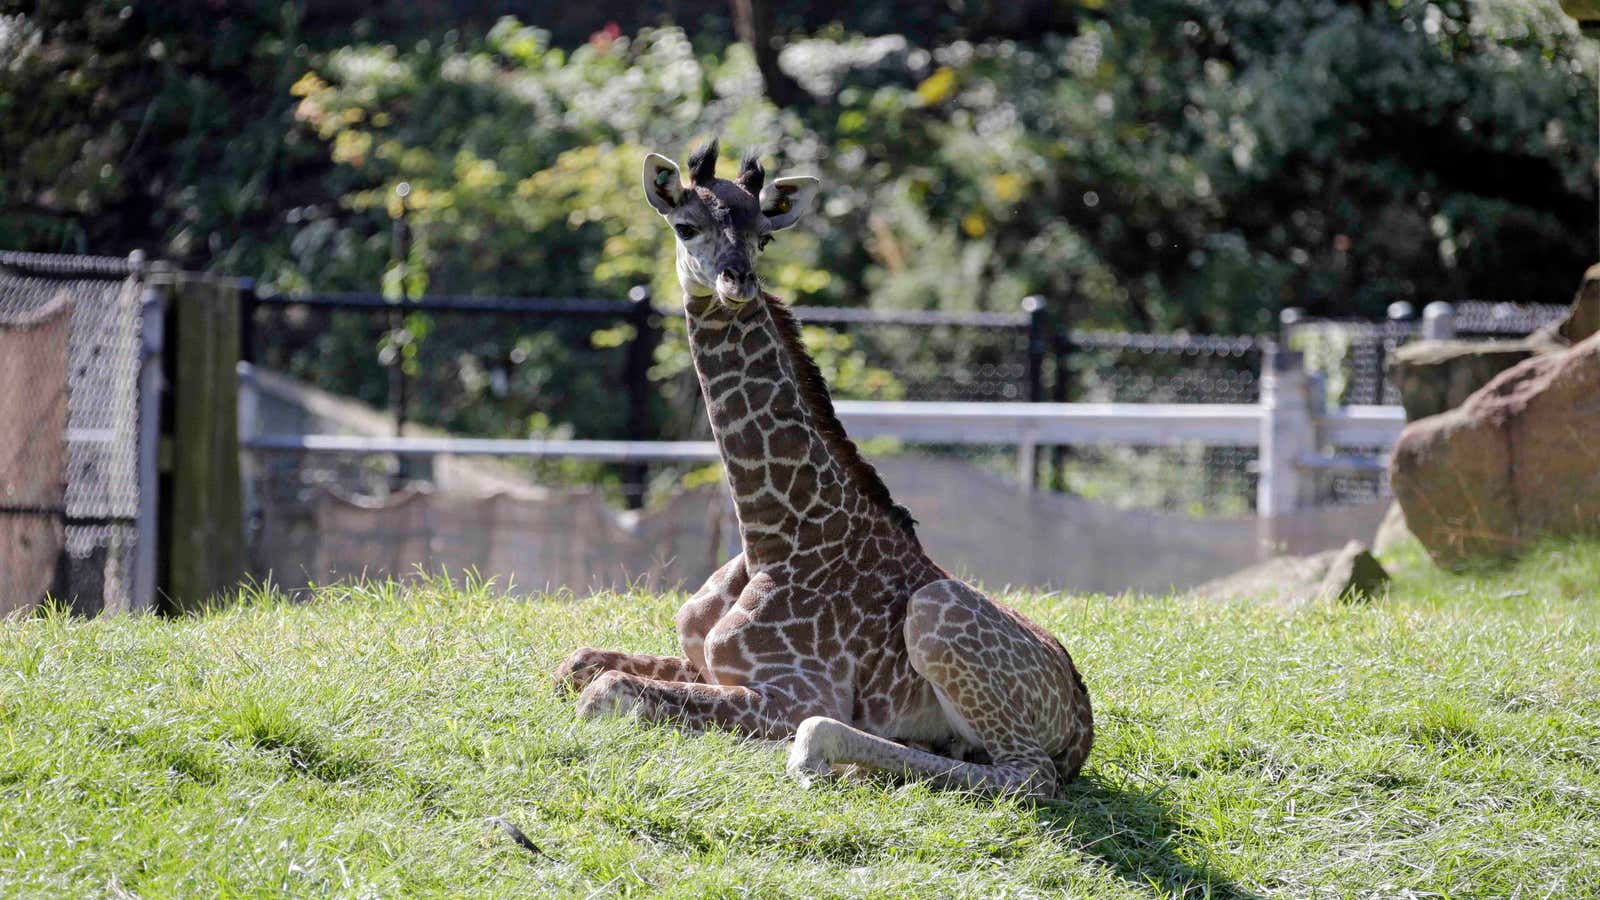 Giraffes: Heartless creatures?